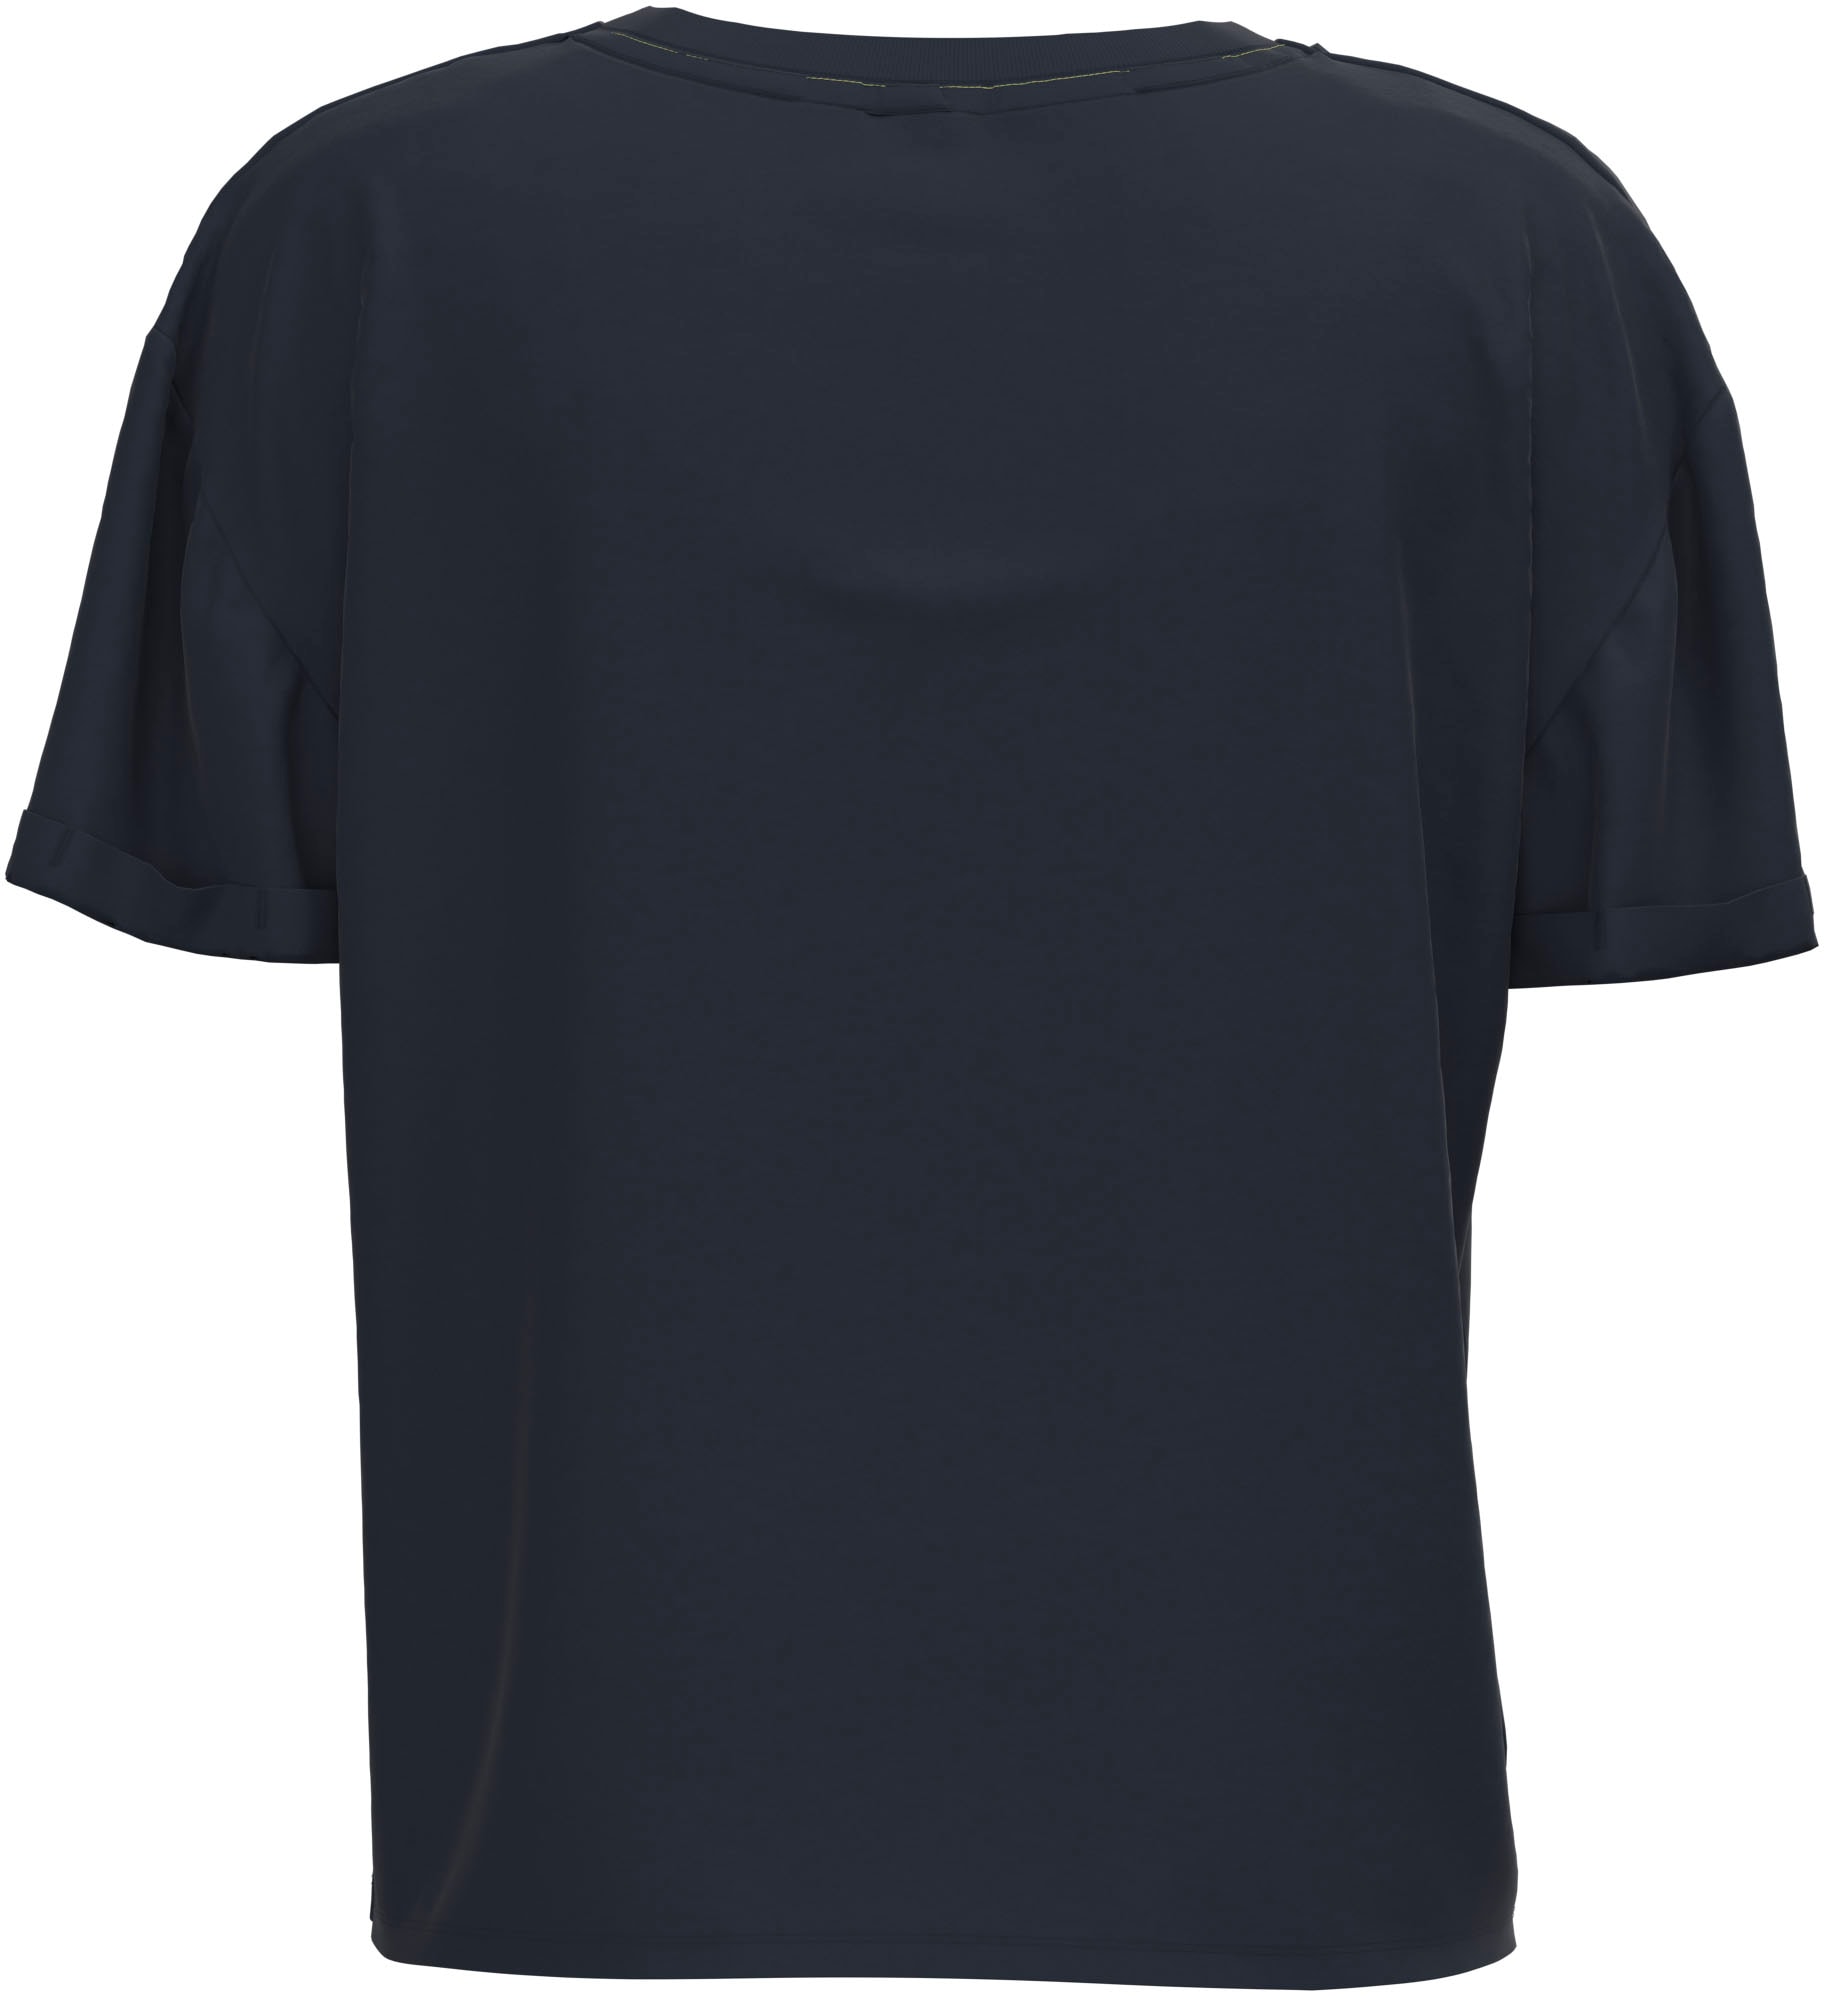 Pepe Jeans markentypischem tollem in ♕ T-Shirt, bei Passform und Frontprint mit oversized